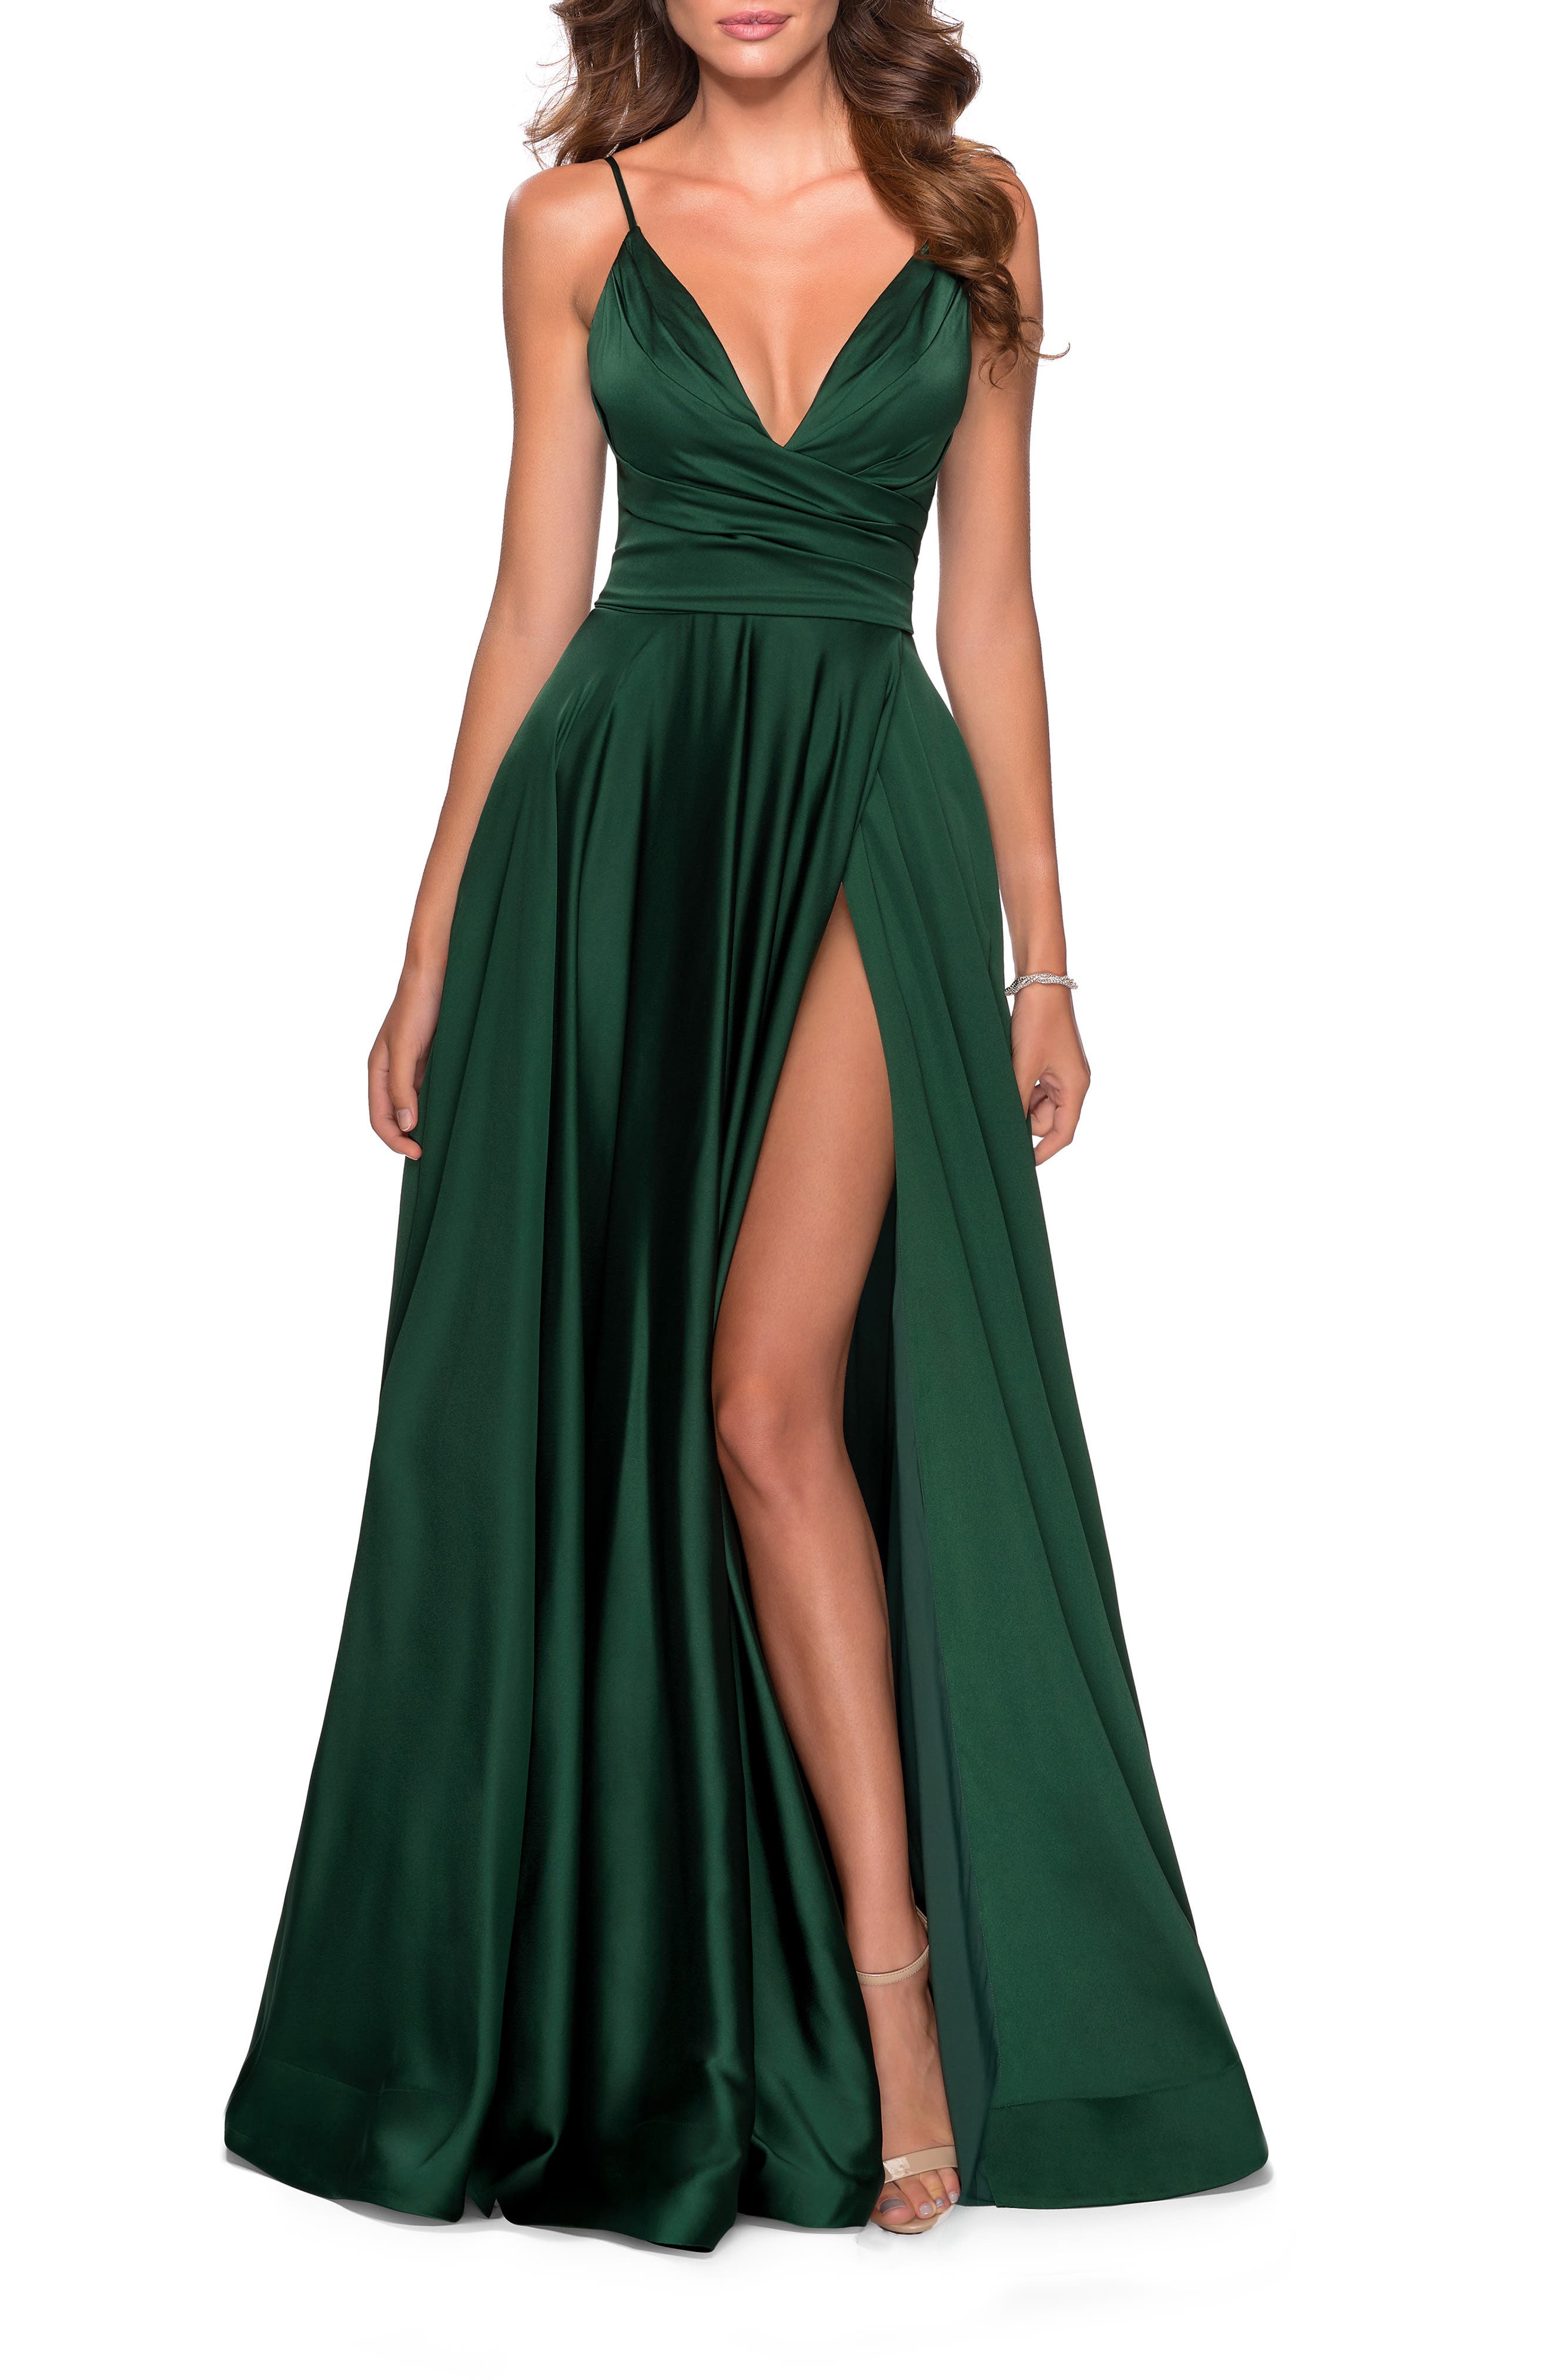 Women's Green Formal Dresses ☀ Evening ...